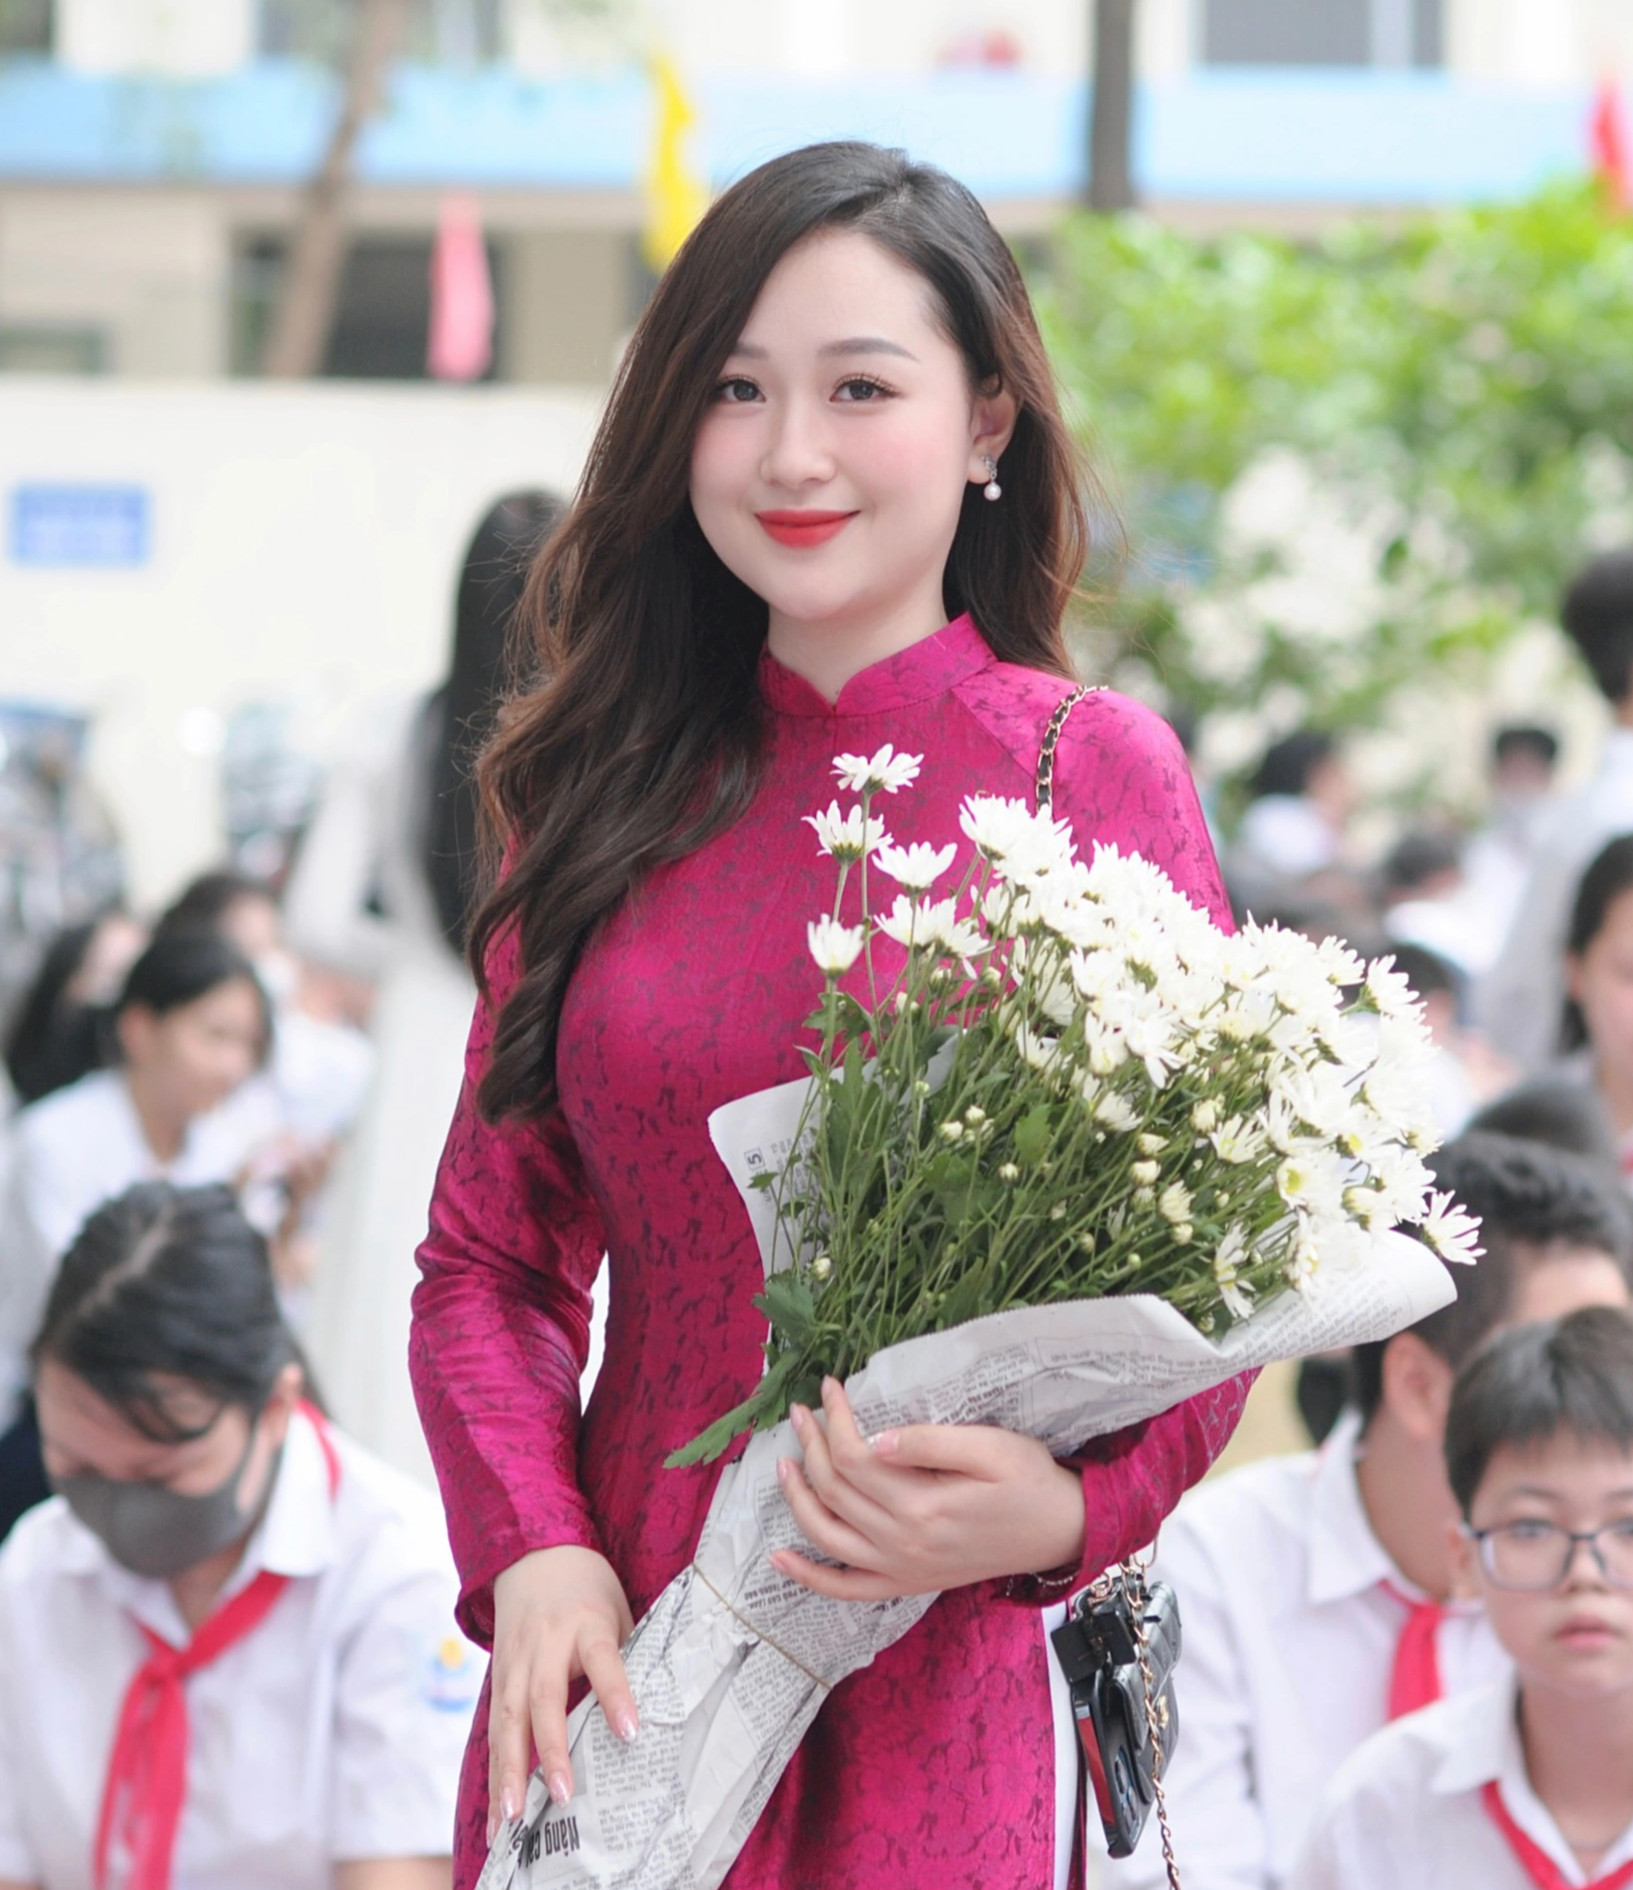 Cô giáo ở Hà Nội bất ngờ nổi tiếng sau lễ khai giảng vì xinh như hot girl - 4